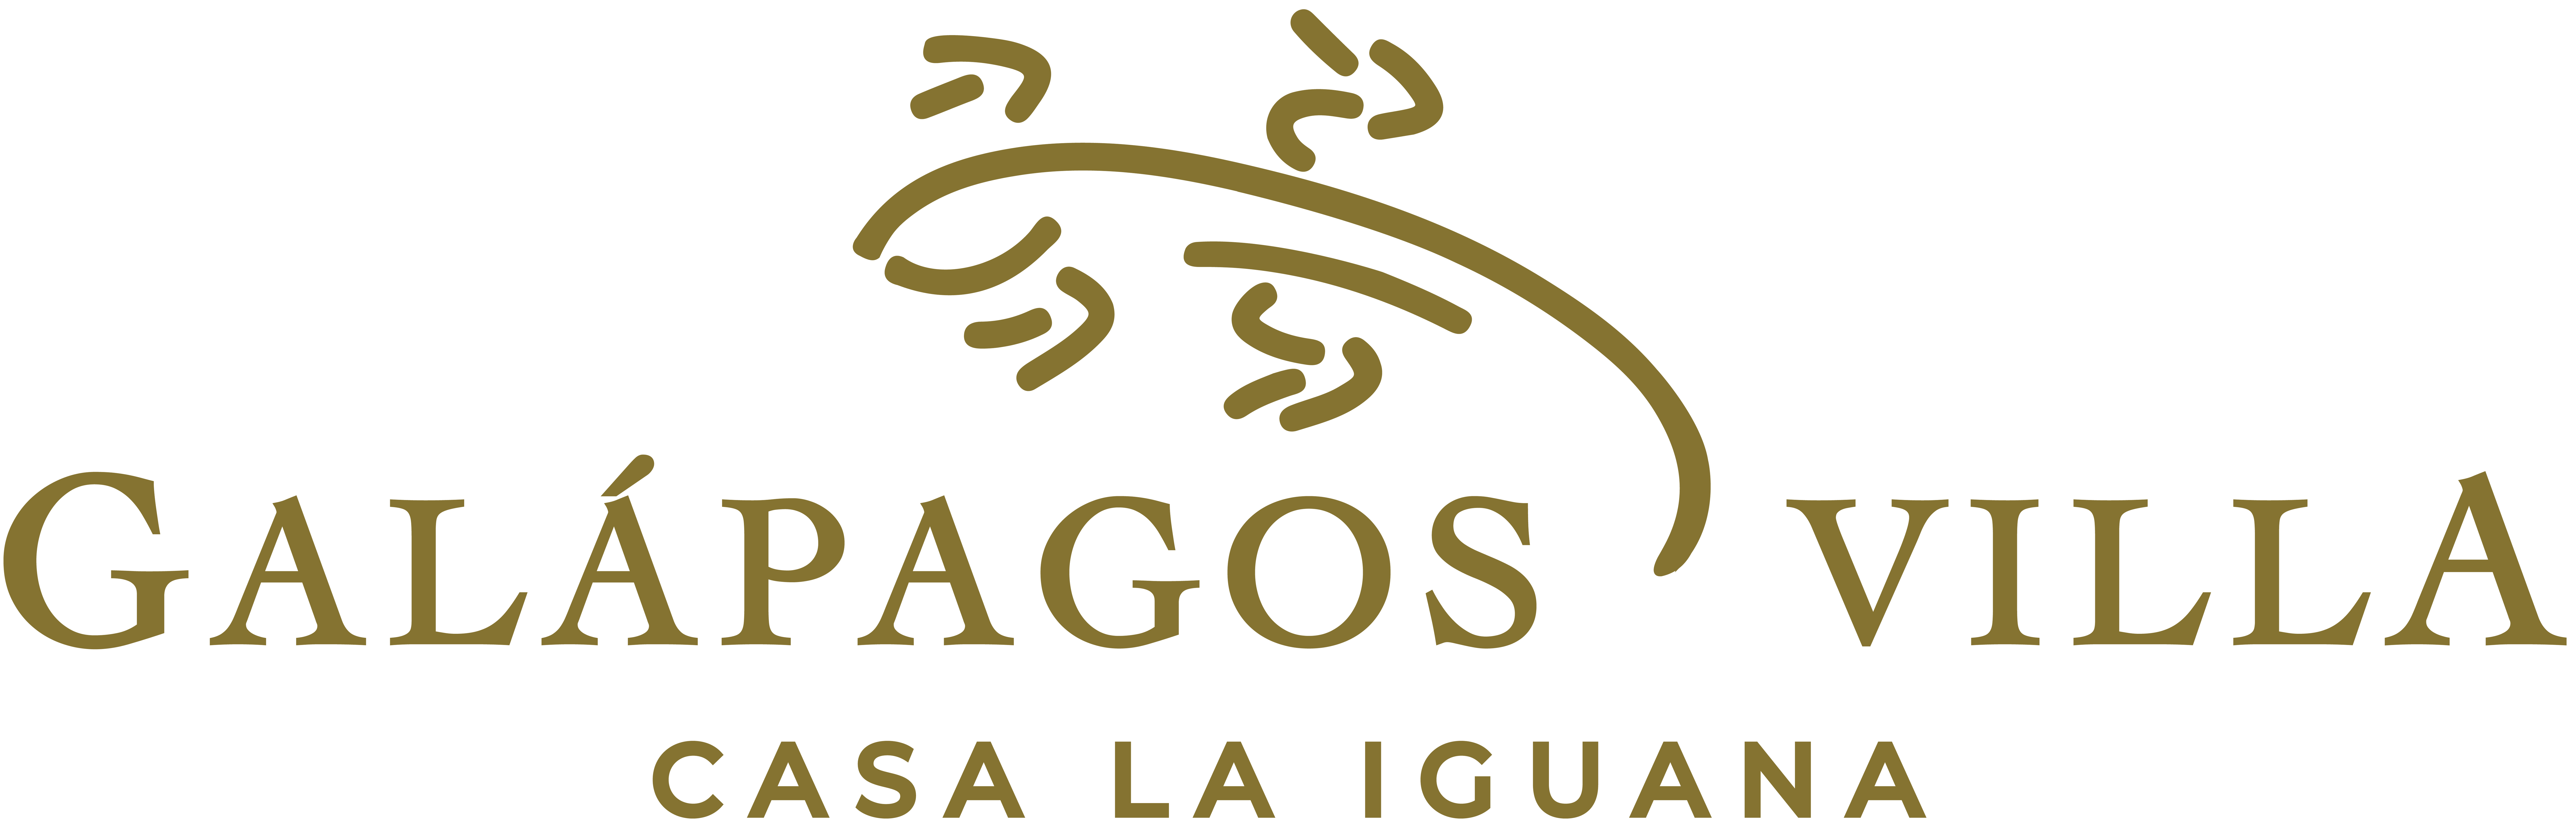 Galapagos Villa